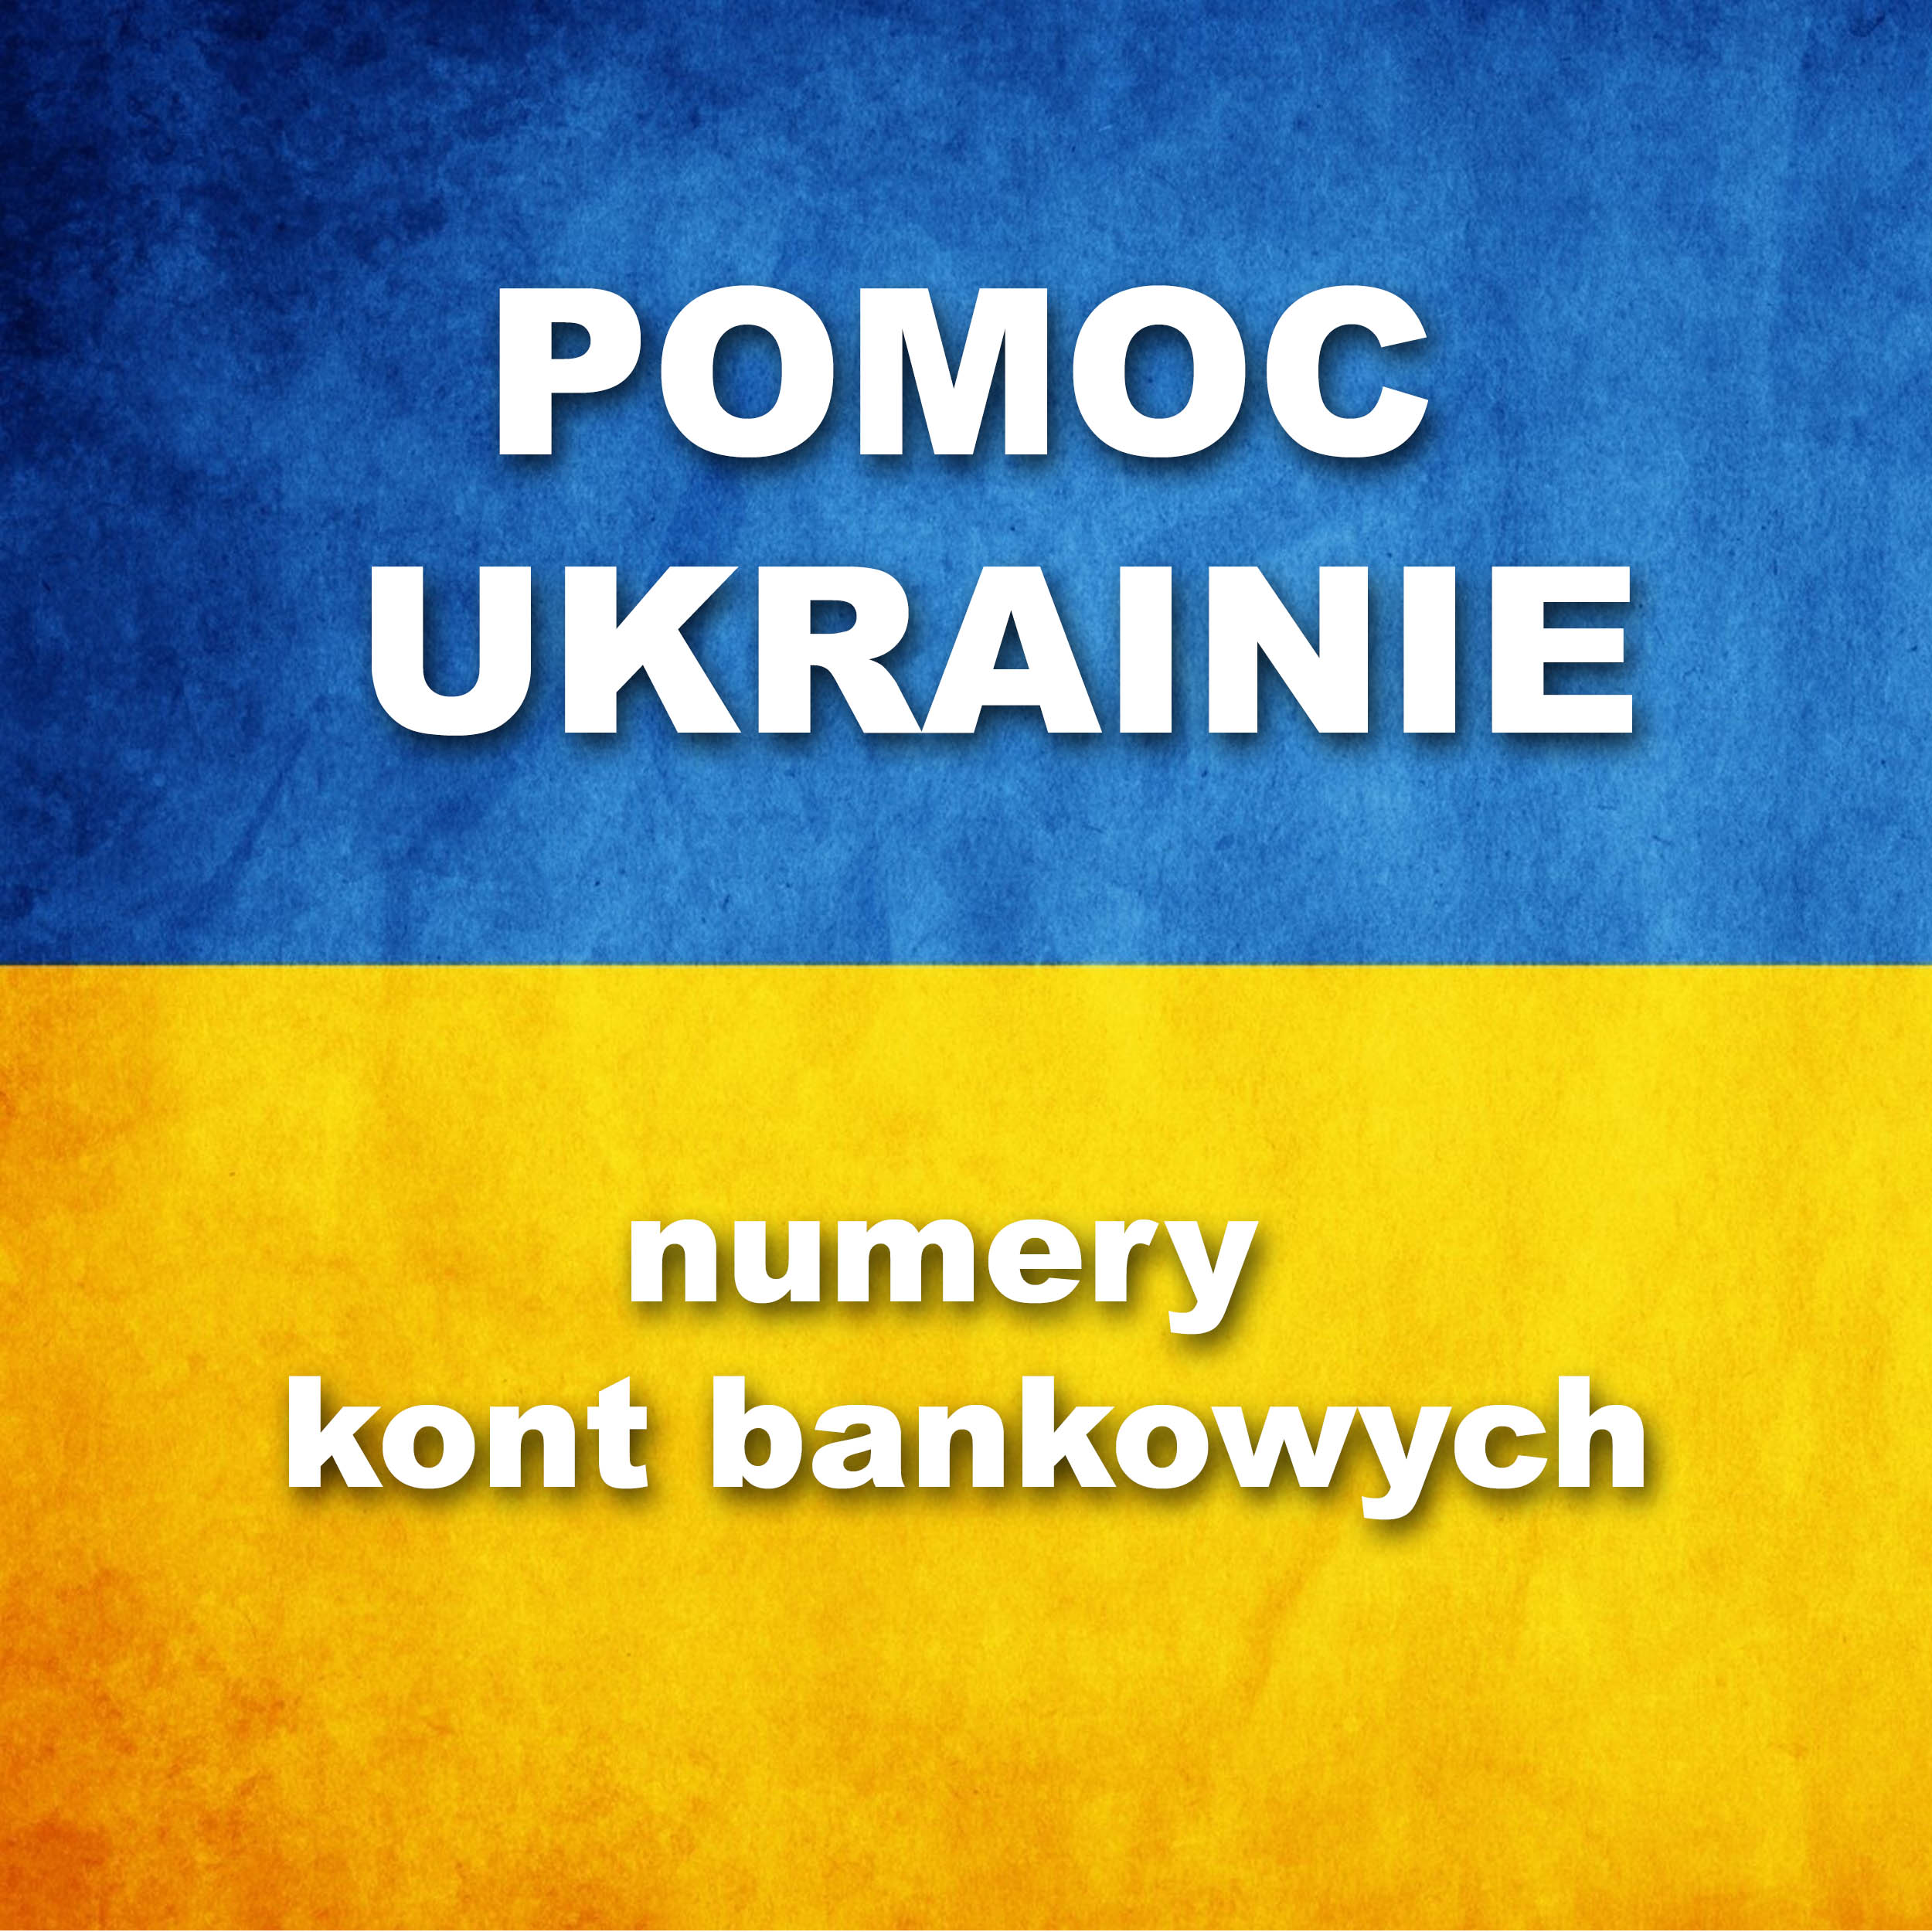 Pomoc Ukrainie - numery kont bankowych